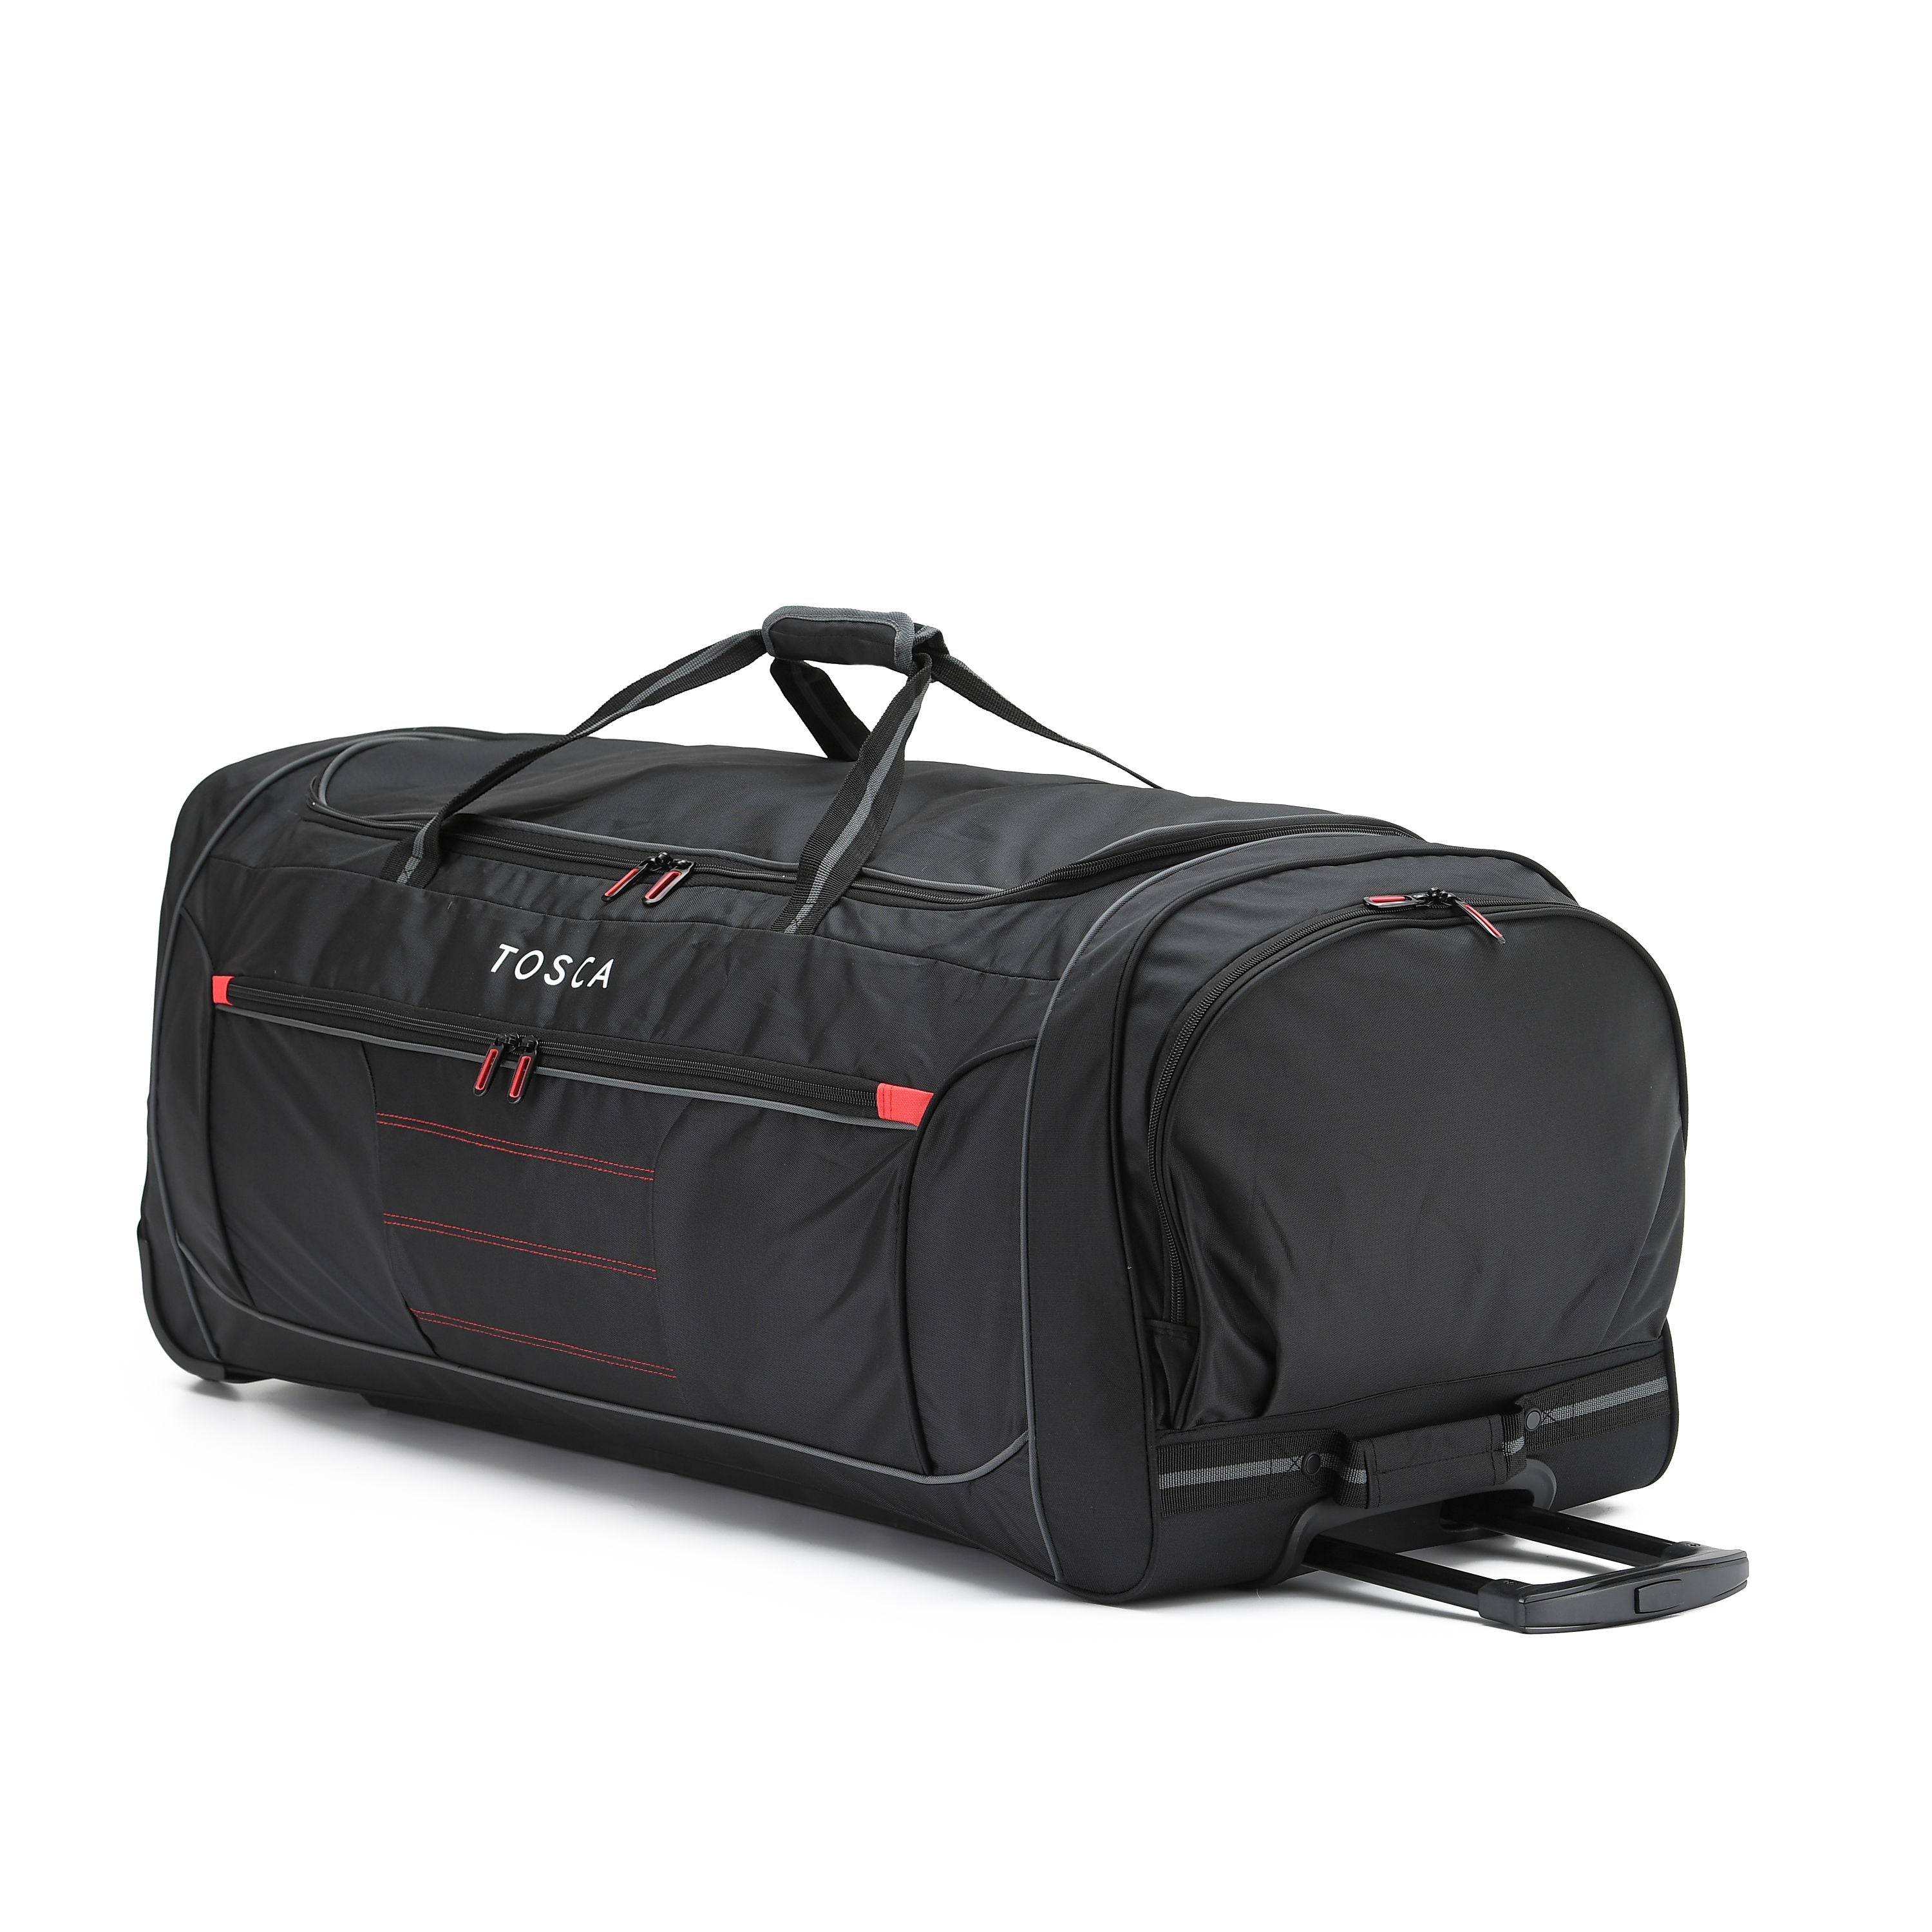 Tosca - TCA794 90cm Jumbo Wheeled Duffle Bag - Black/Red-2